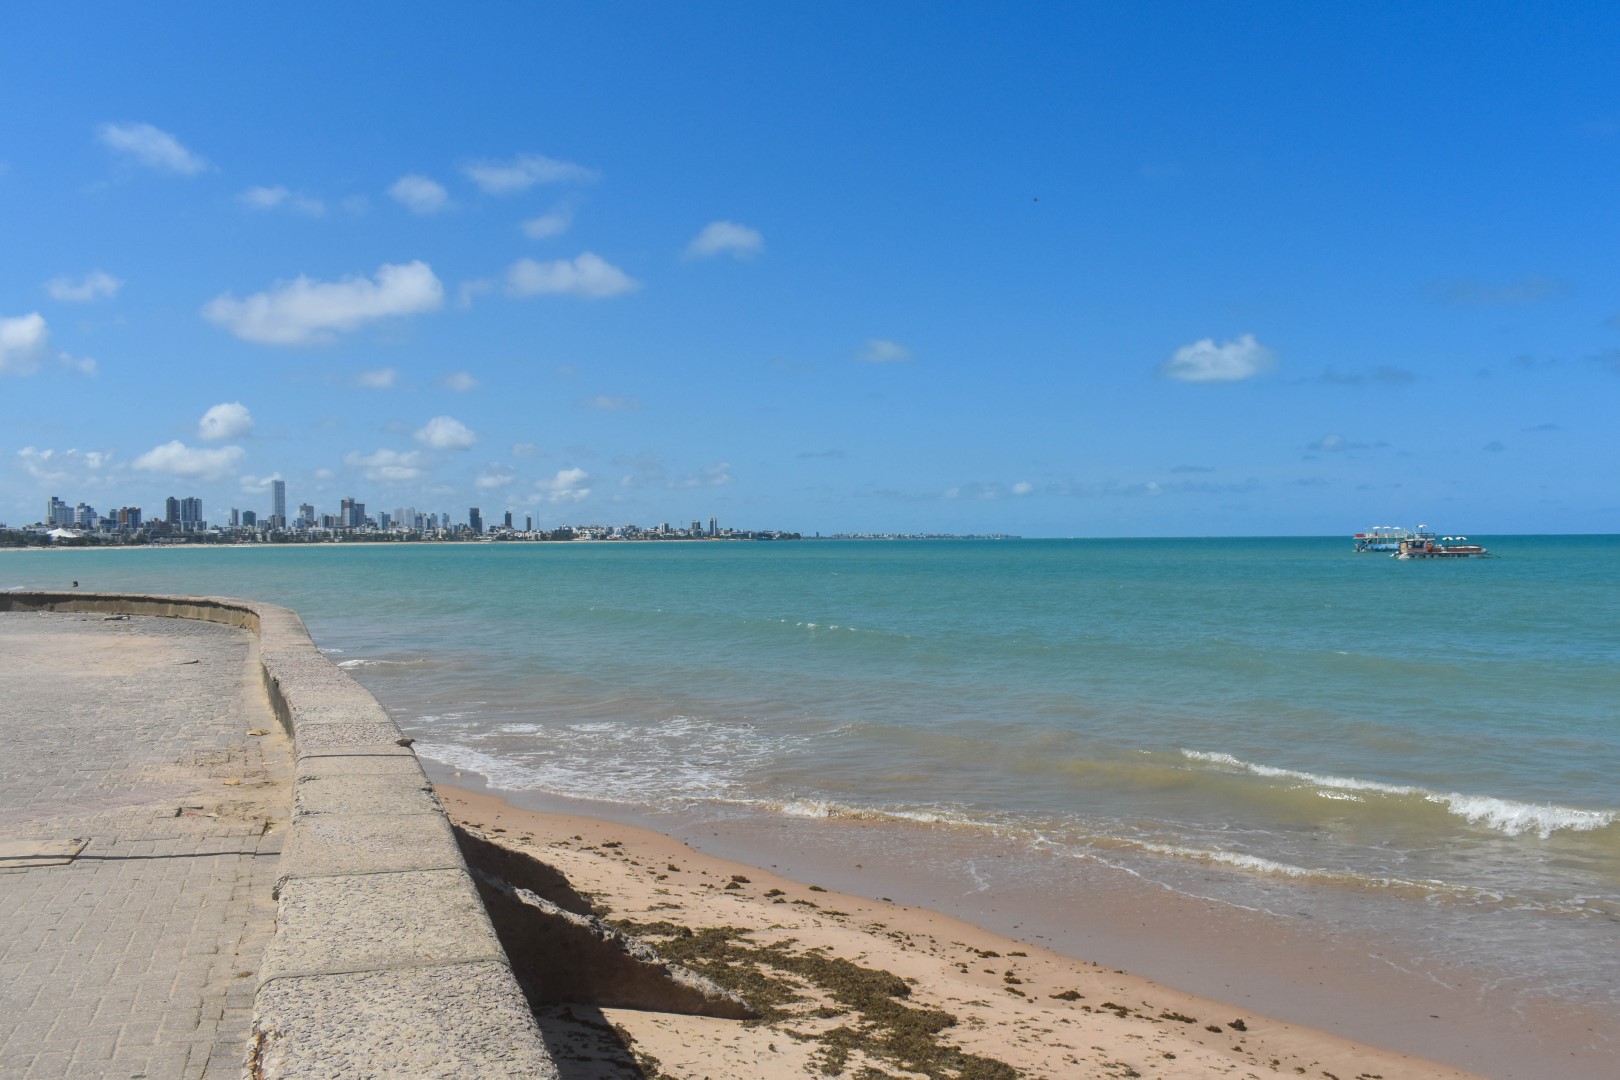 Praia de Tambaú - Avenida Almirante Tamandaré - Tambaú, João Pessoa - State of Paraíba